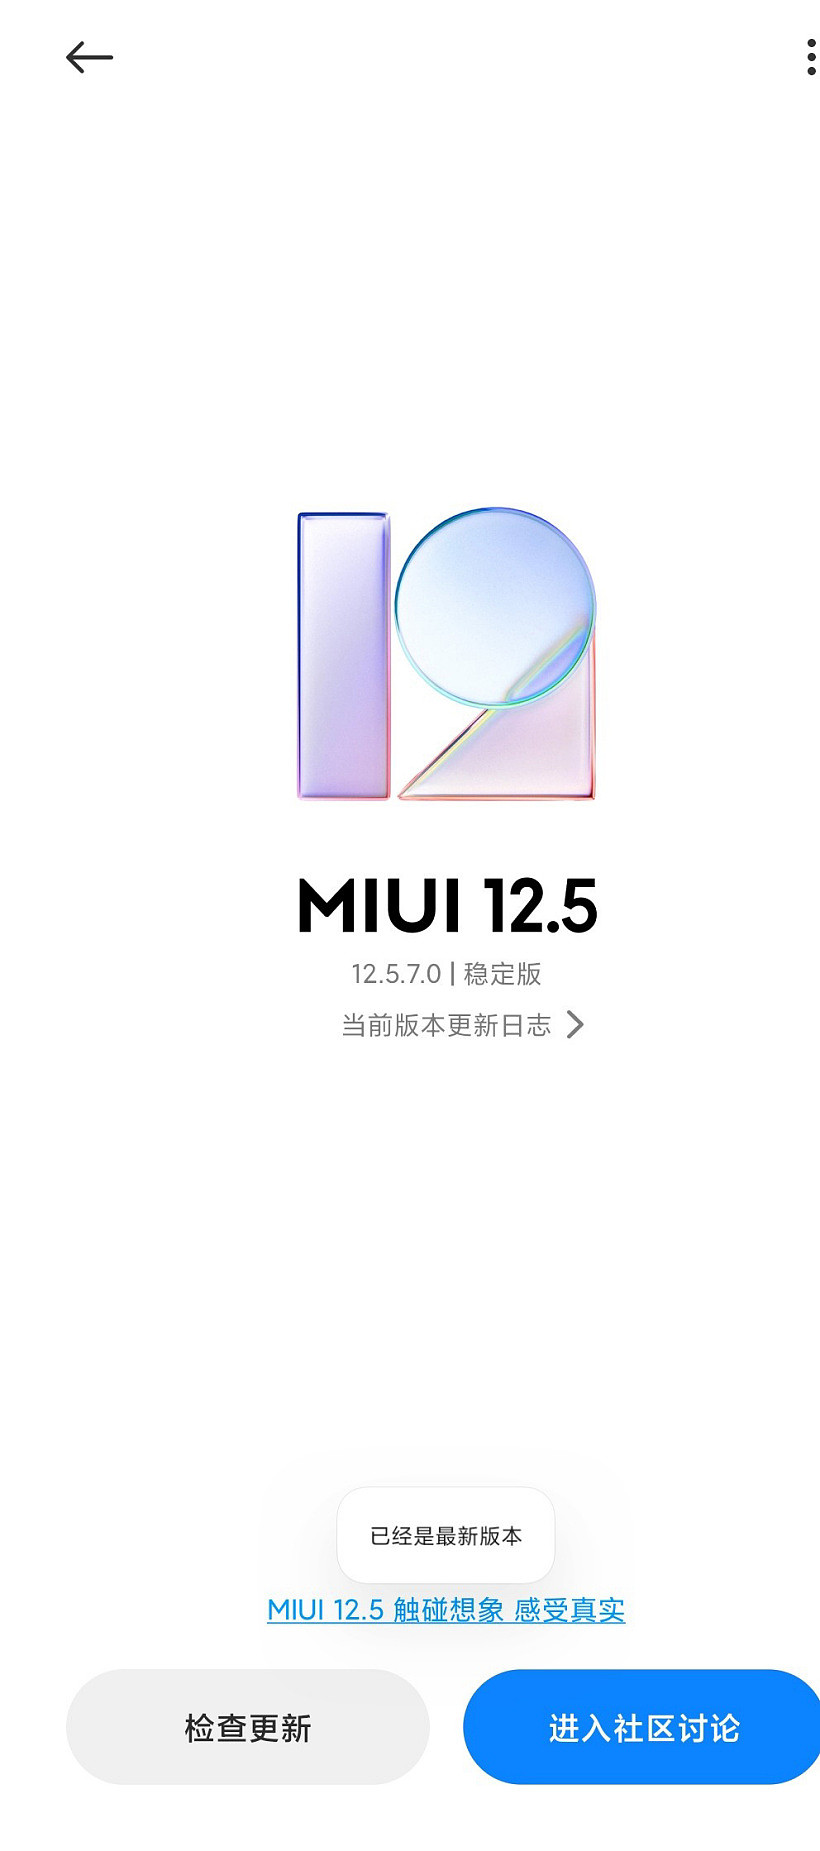 小米 10/Pro 手机推送 MIUI 12.5.7.0 增强版系统更新 - 1